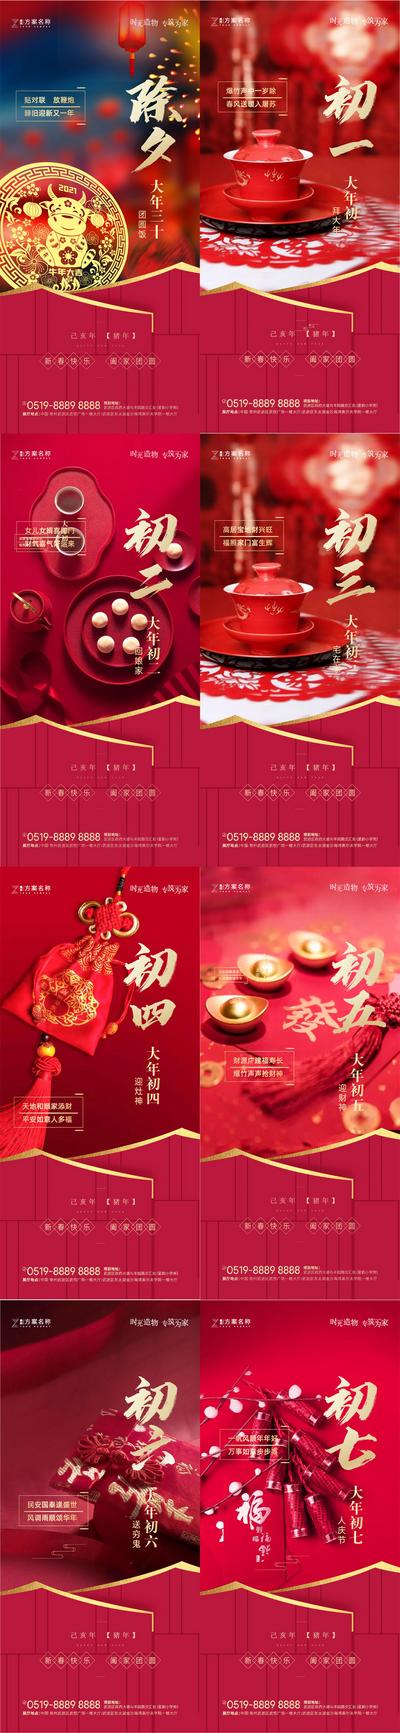 南门网 海报 房地产 中国传统节日 春节 除夕 年俗 系列